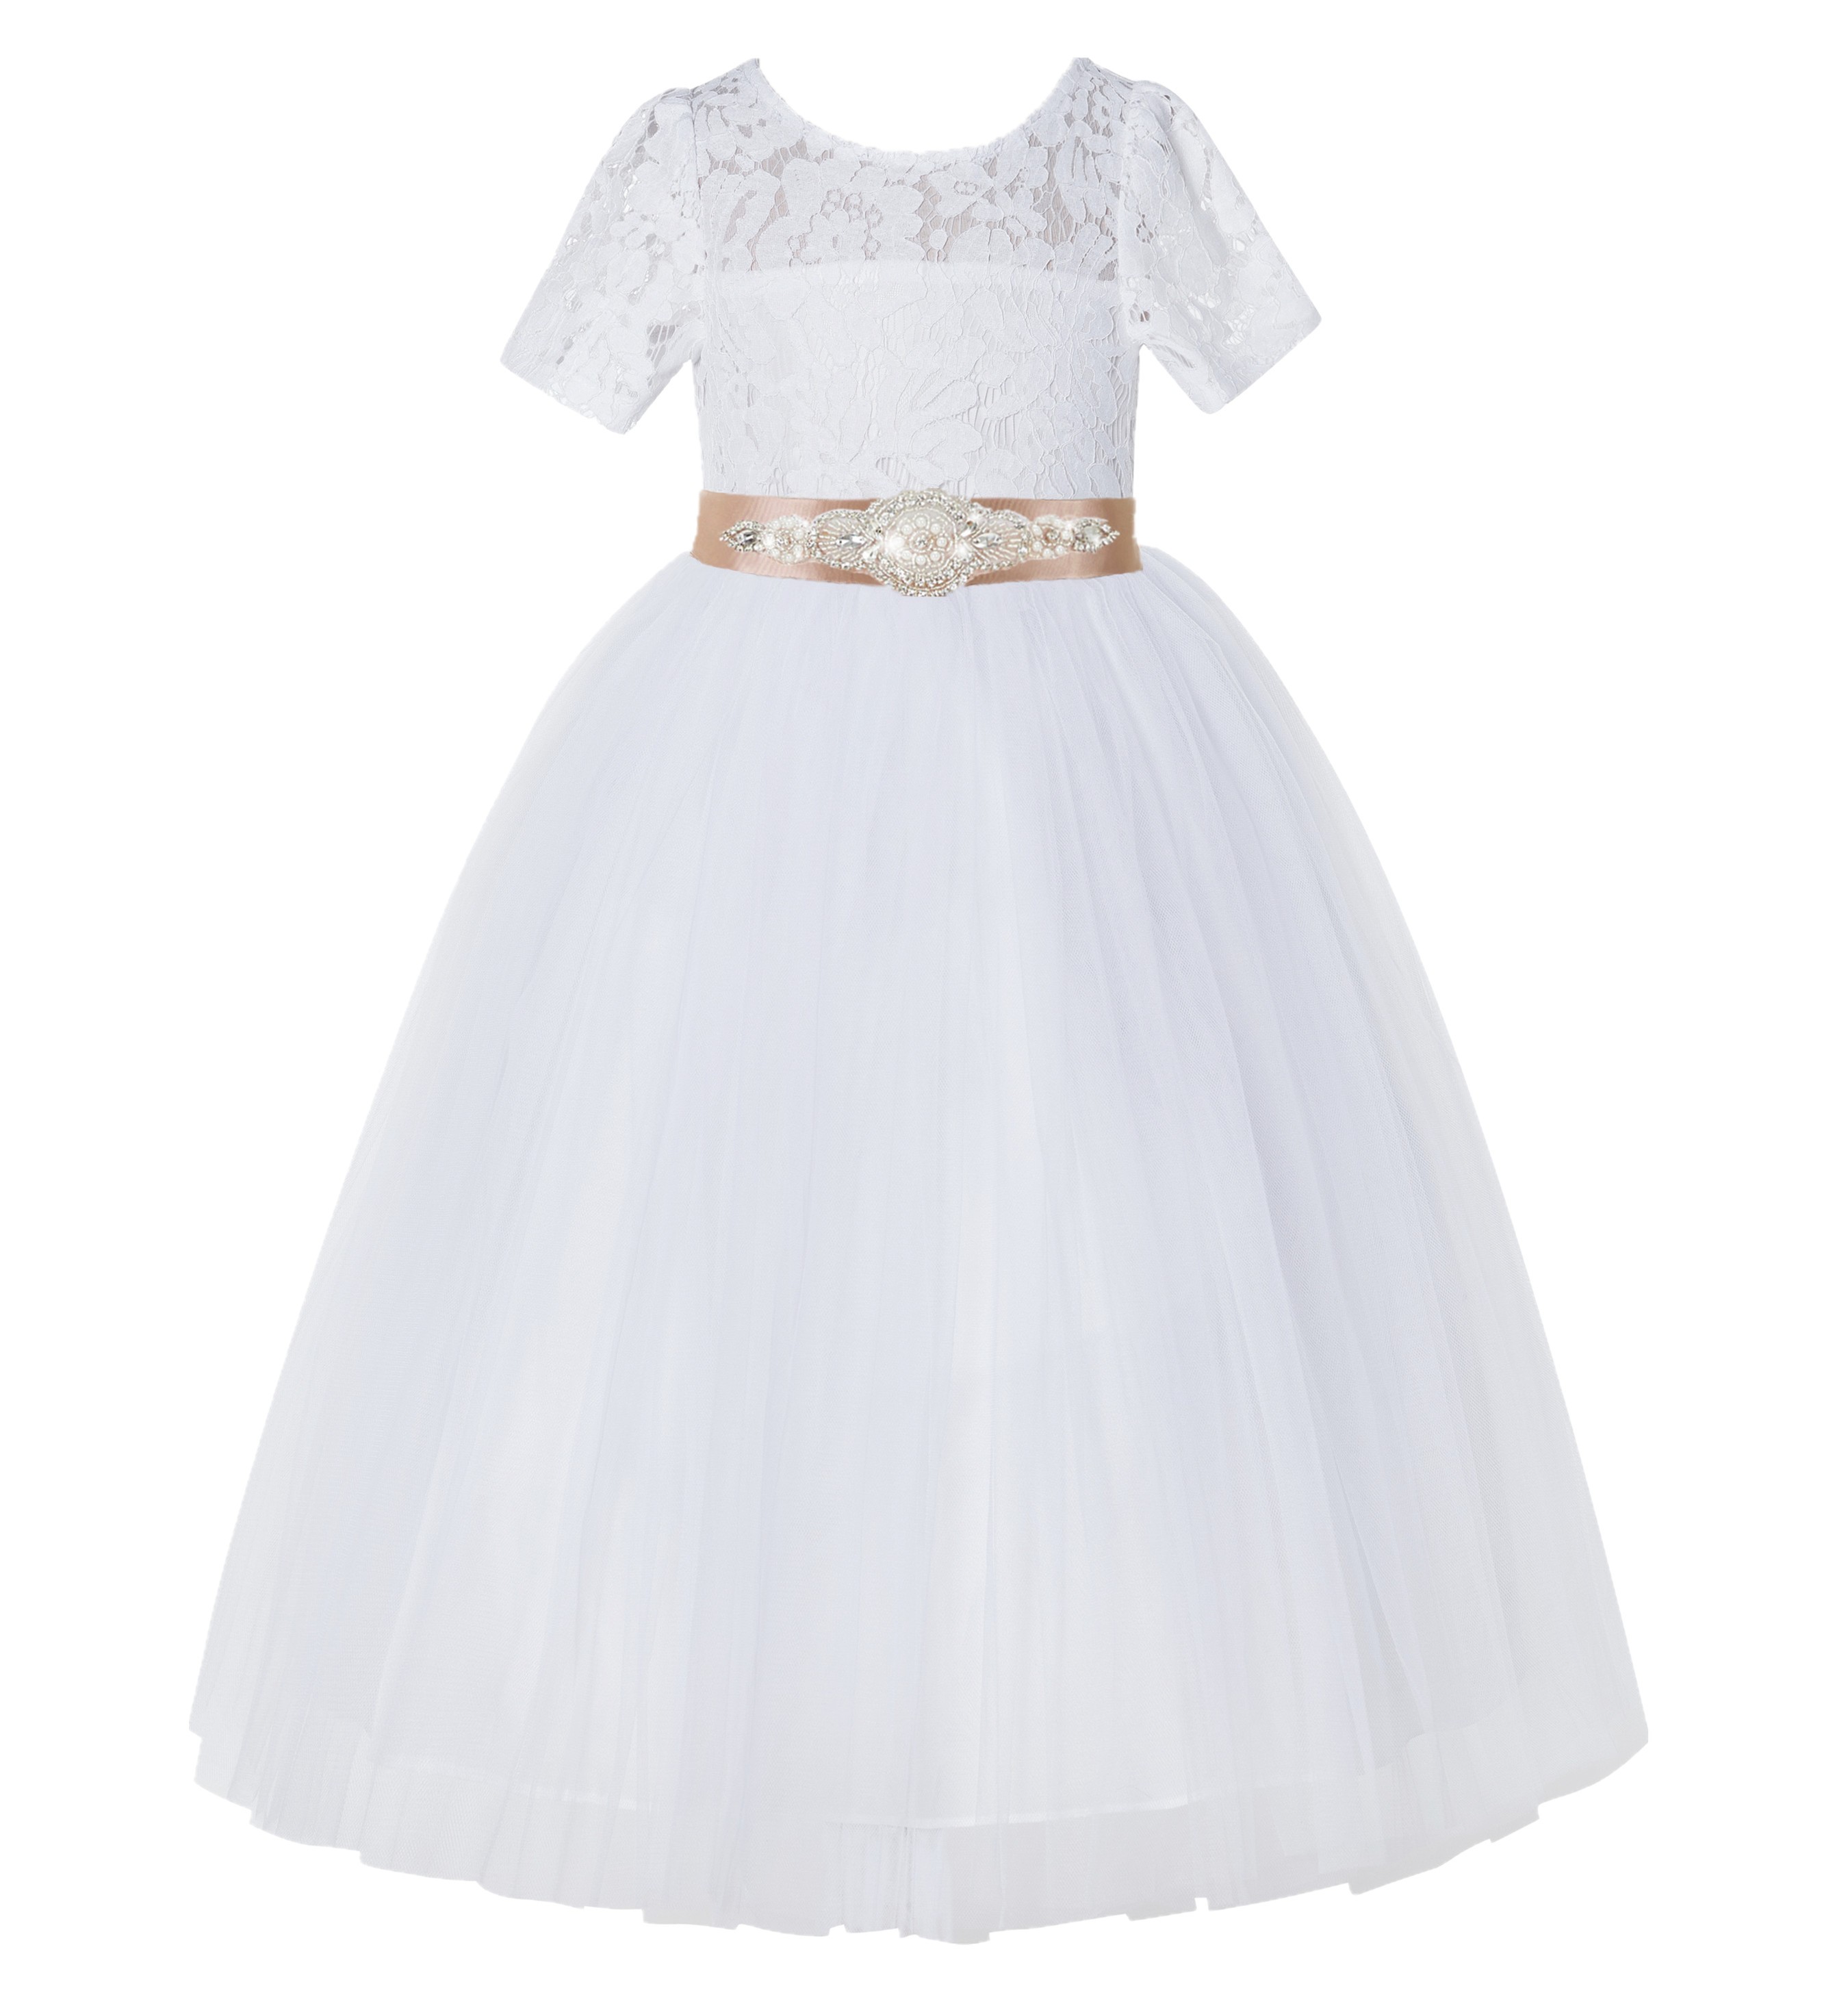 White / Rose Gold Floral Lace Flower Girl Dress Vintage Dress LG2